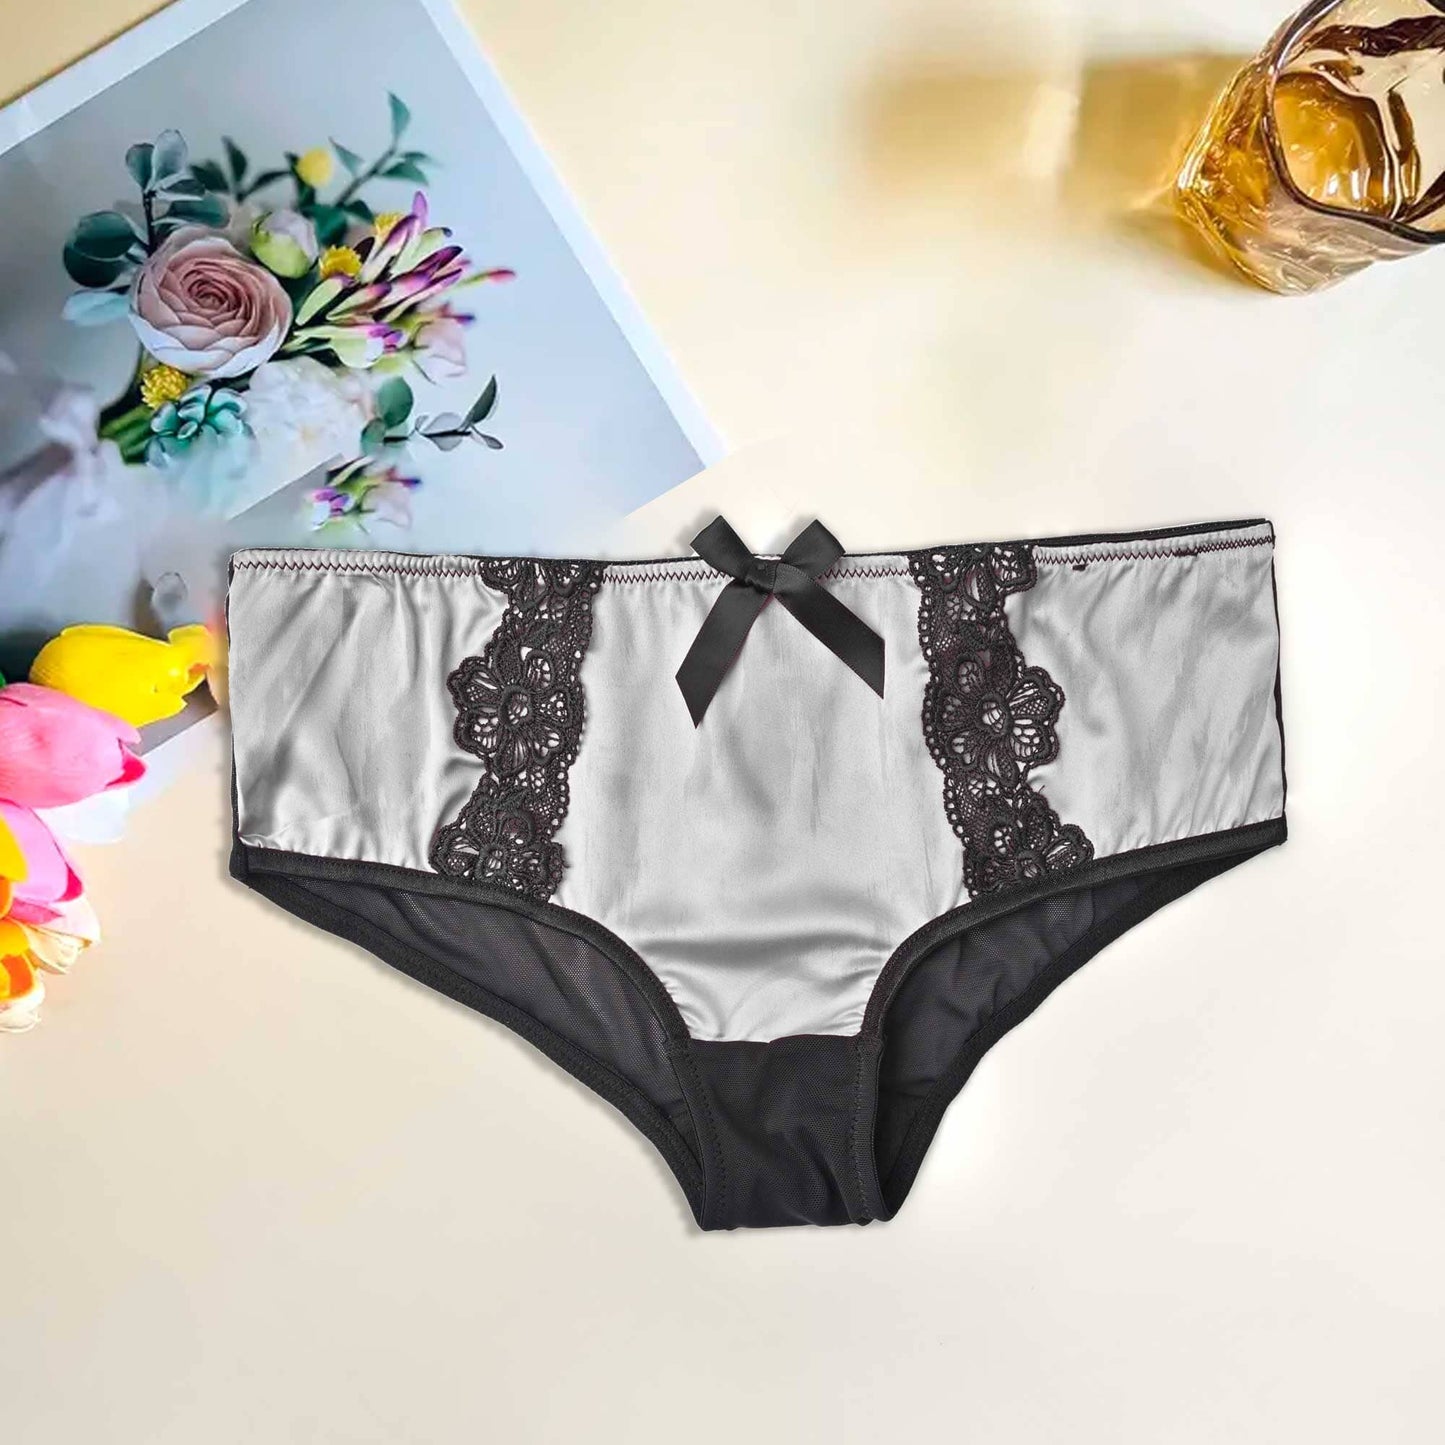 Mpz Women's Fancy Lace Design Silk Underwear Women's Lingerie RAM Grey M 